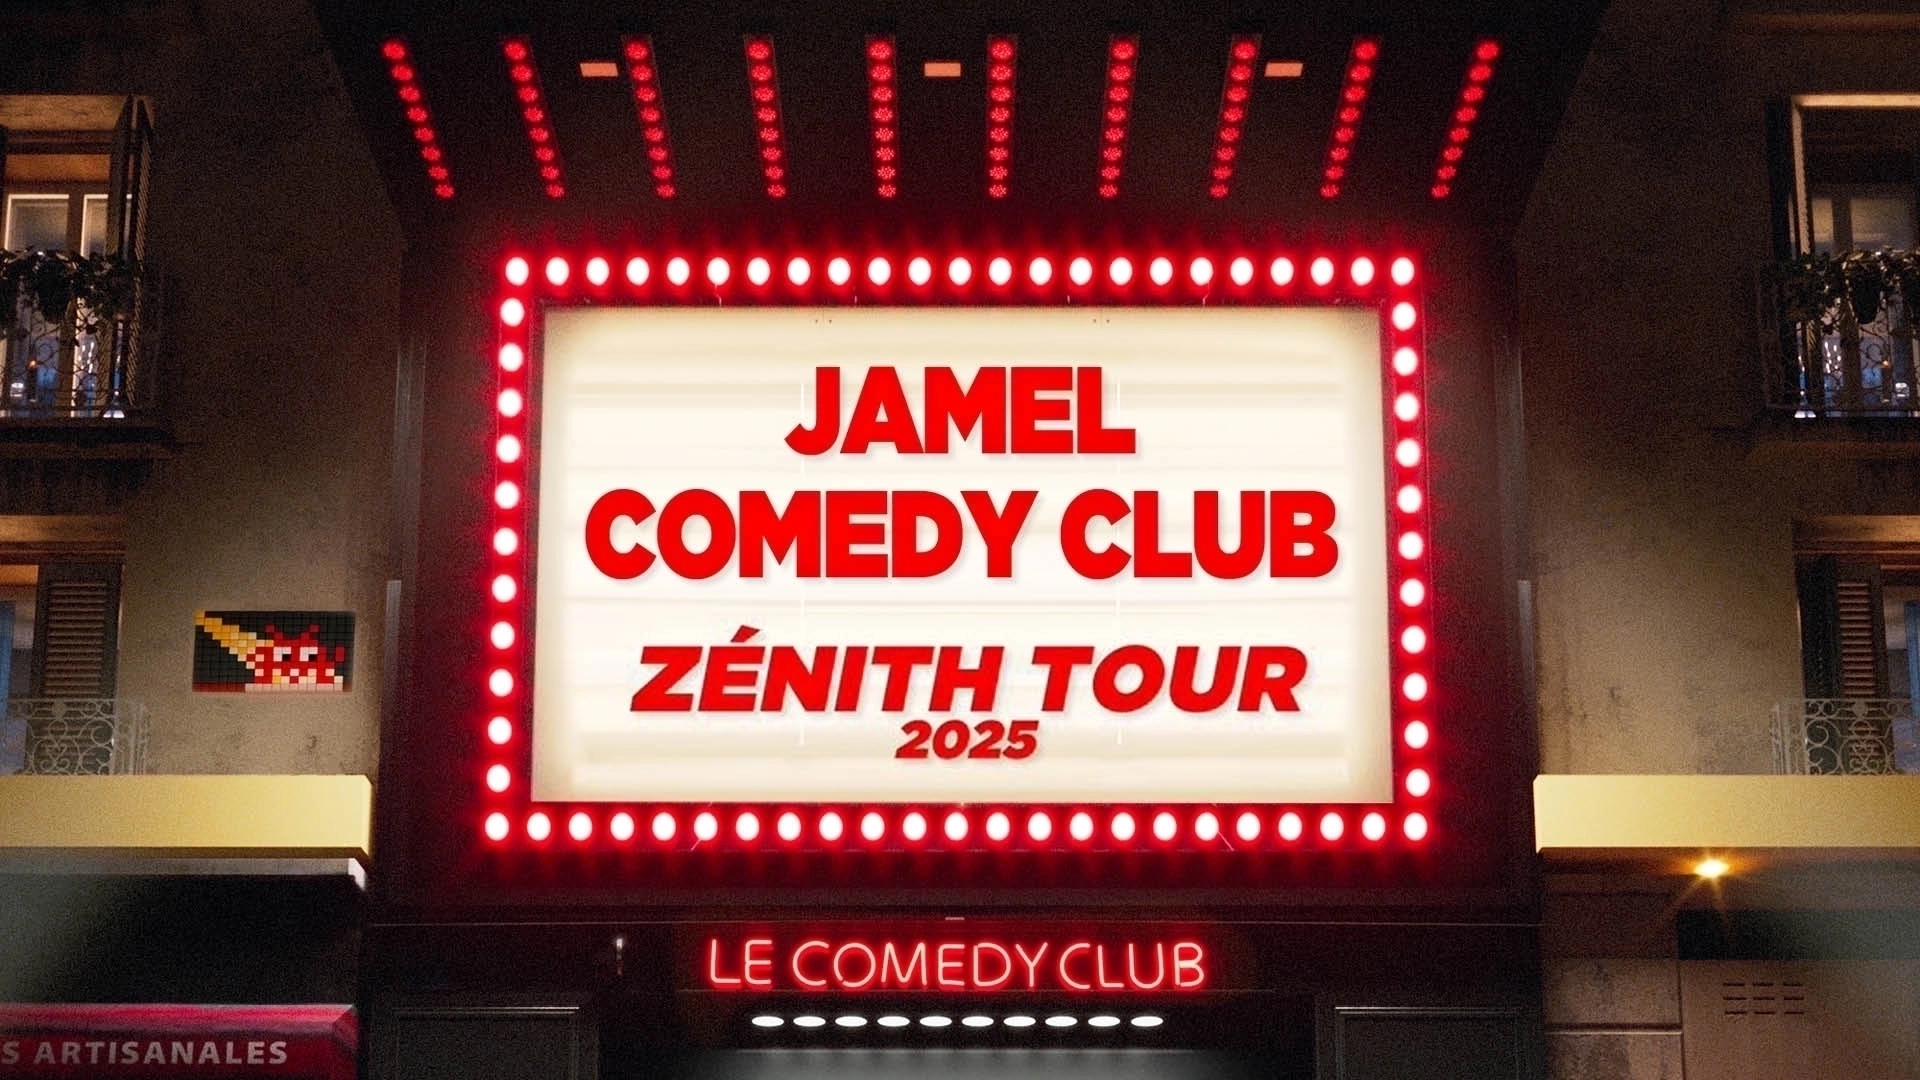 Jamel Comedy Club Zenith Tour 2025 in der Arena Futuroscope Tickets